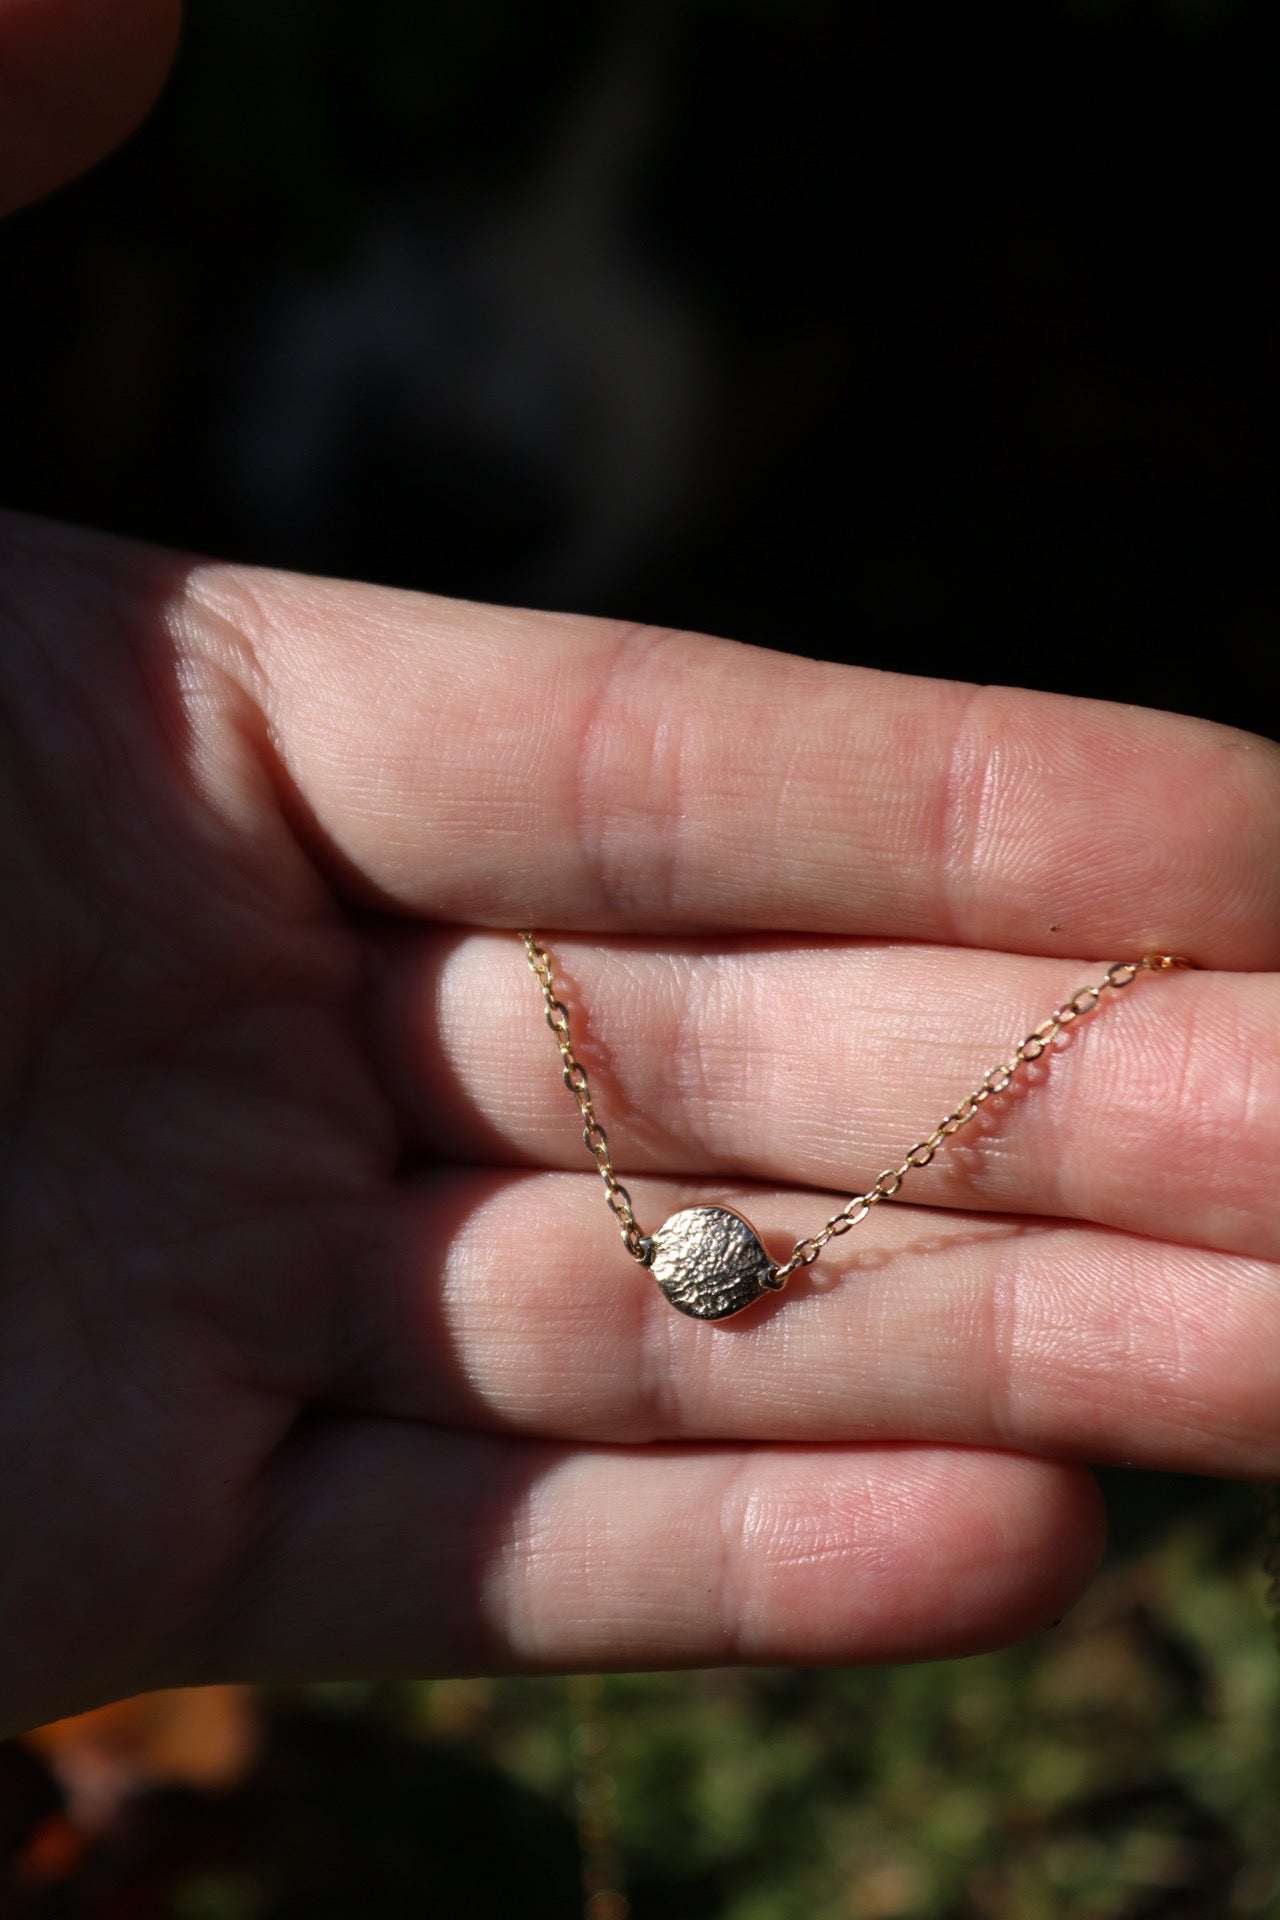 X-Mini Fingerprint Necklace - 9ct Gold